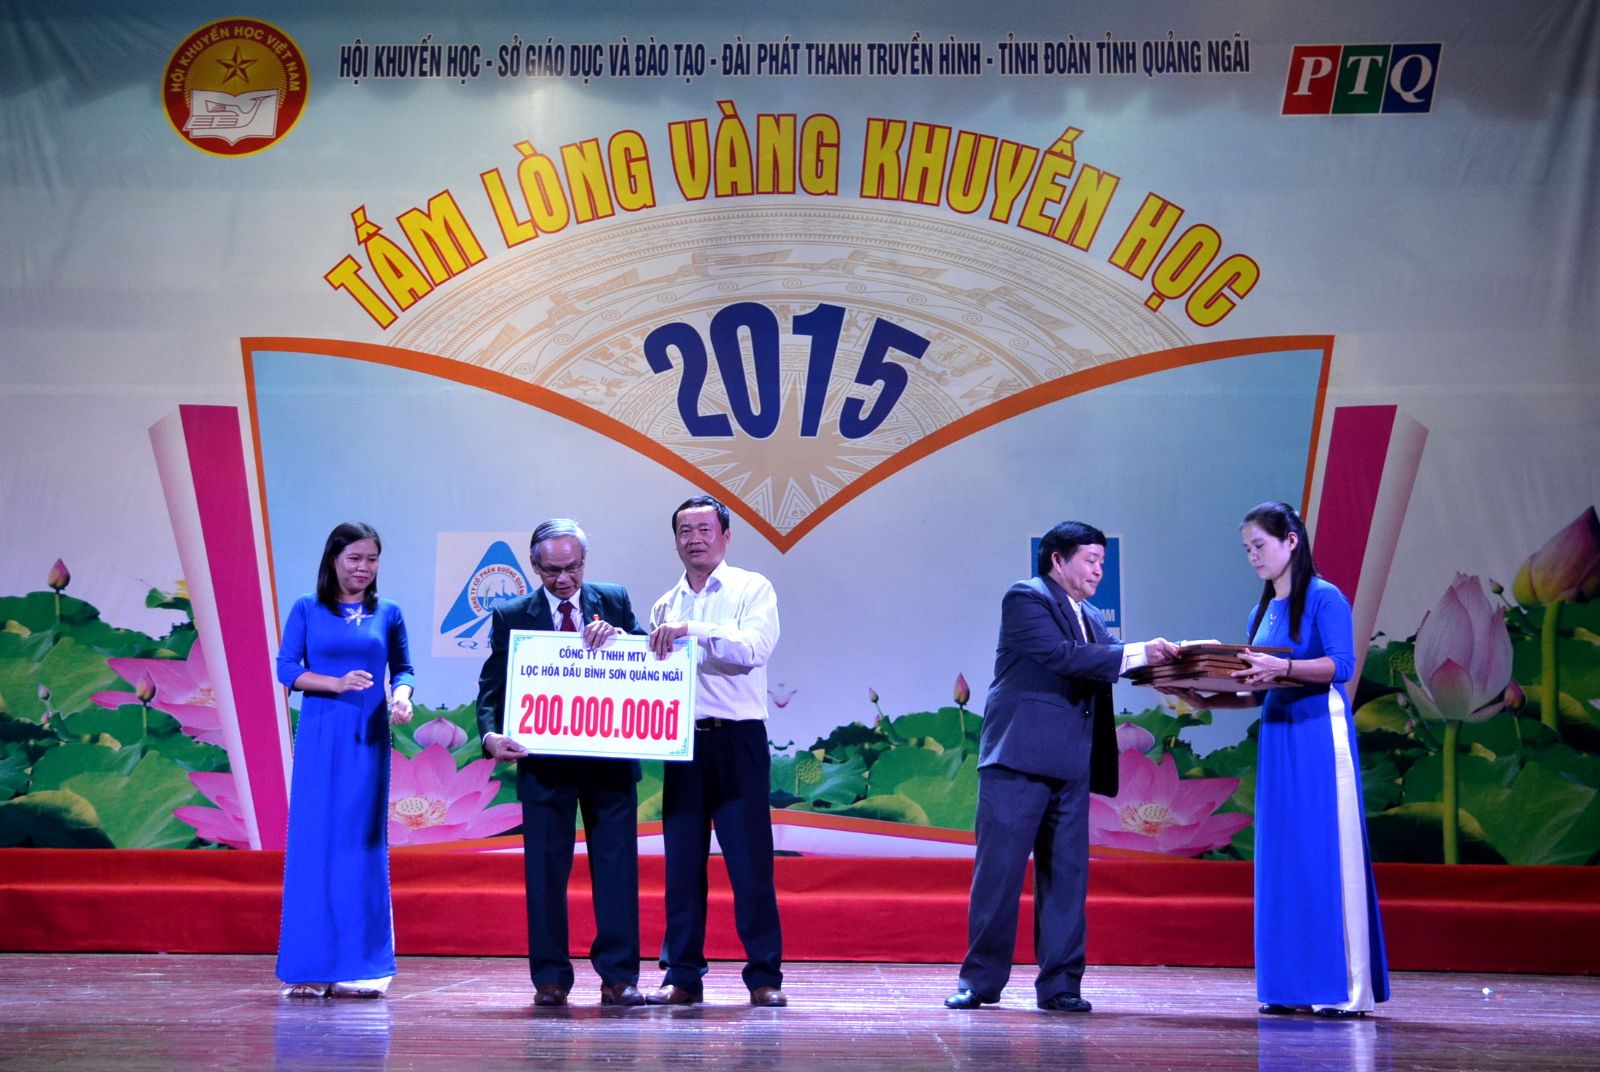 BSR tài trợ “Quỹ tấm lòng vàng khuyến học” của tỉnh Quảng Ngãi